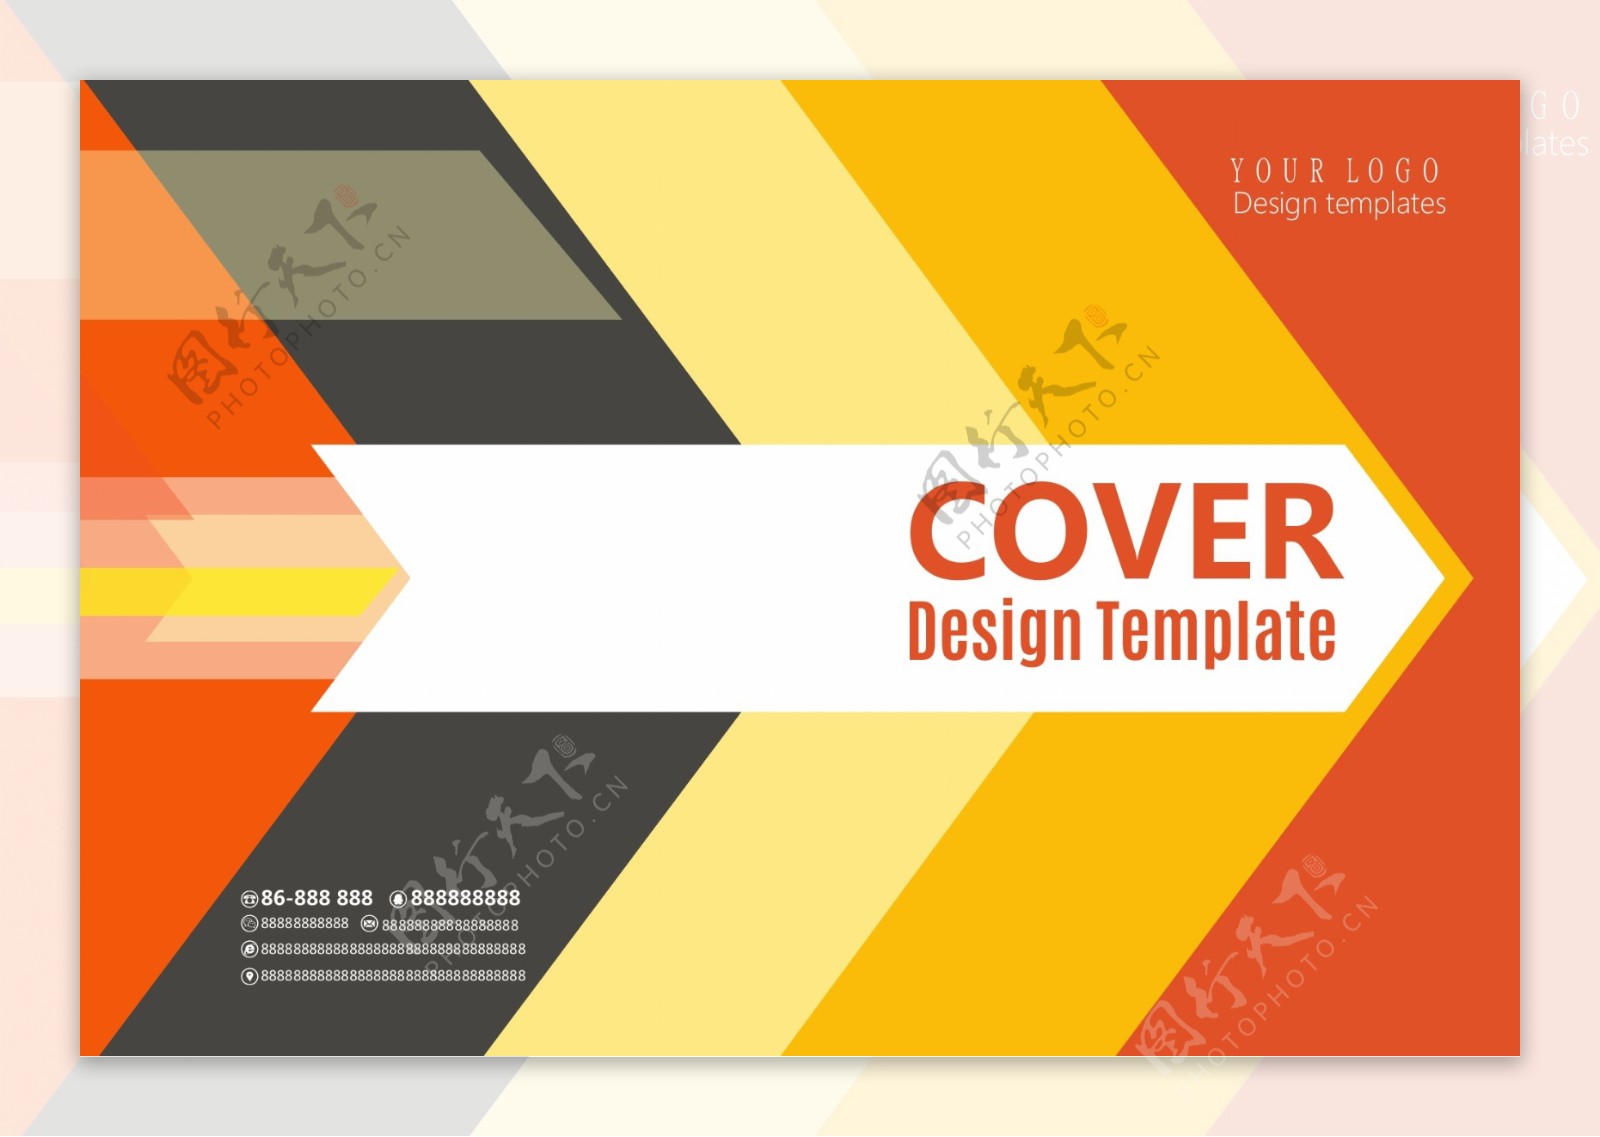 简洁时尚大气企业宣传画册封面设计